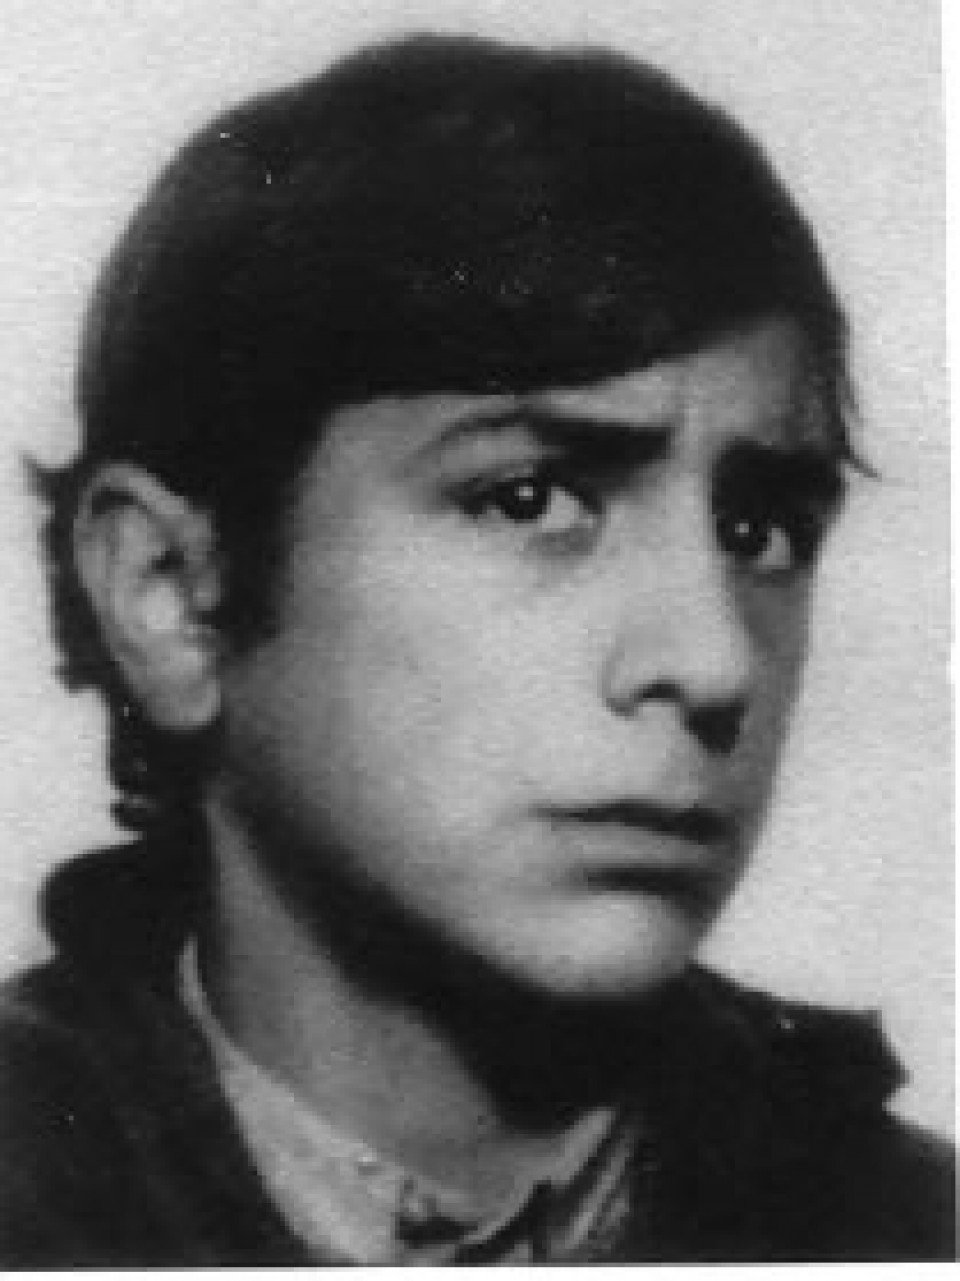 Martxoak 3 - 3 de marzo de 1976 - asesinado - Franciso Aznar Clemente (17 años)